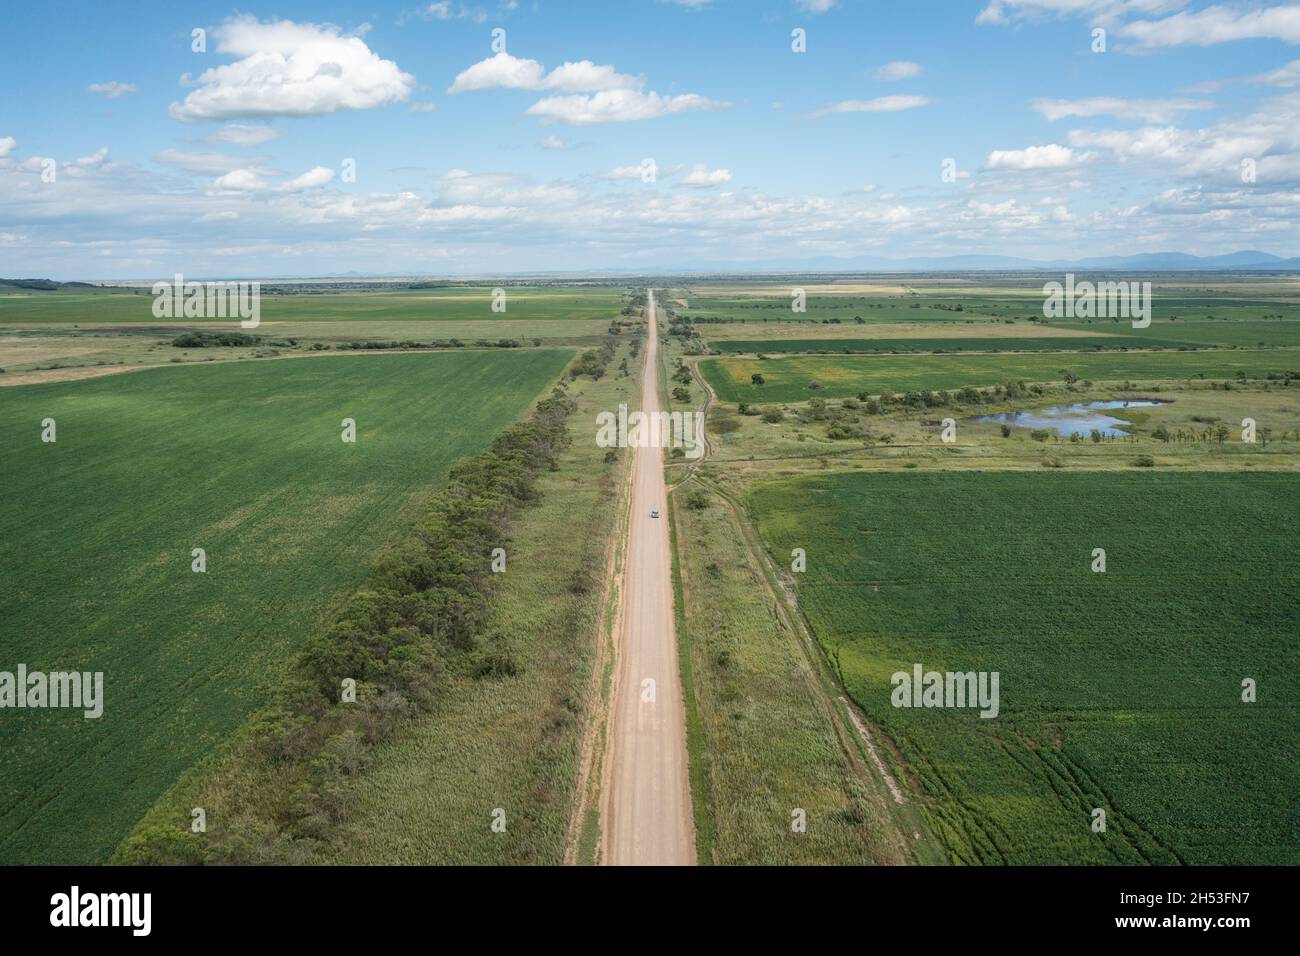 Eine Landstraße zwischen den Feldern, die sich bis in die Ferne erstreckt, fährt ein Auto entlang. Stockfoto